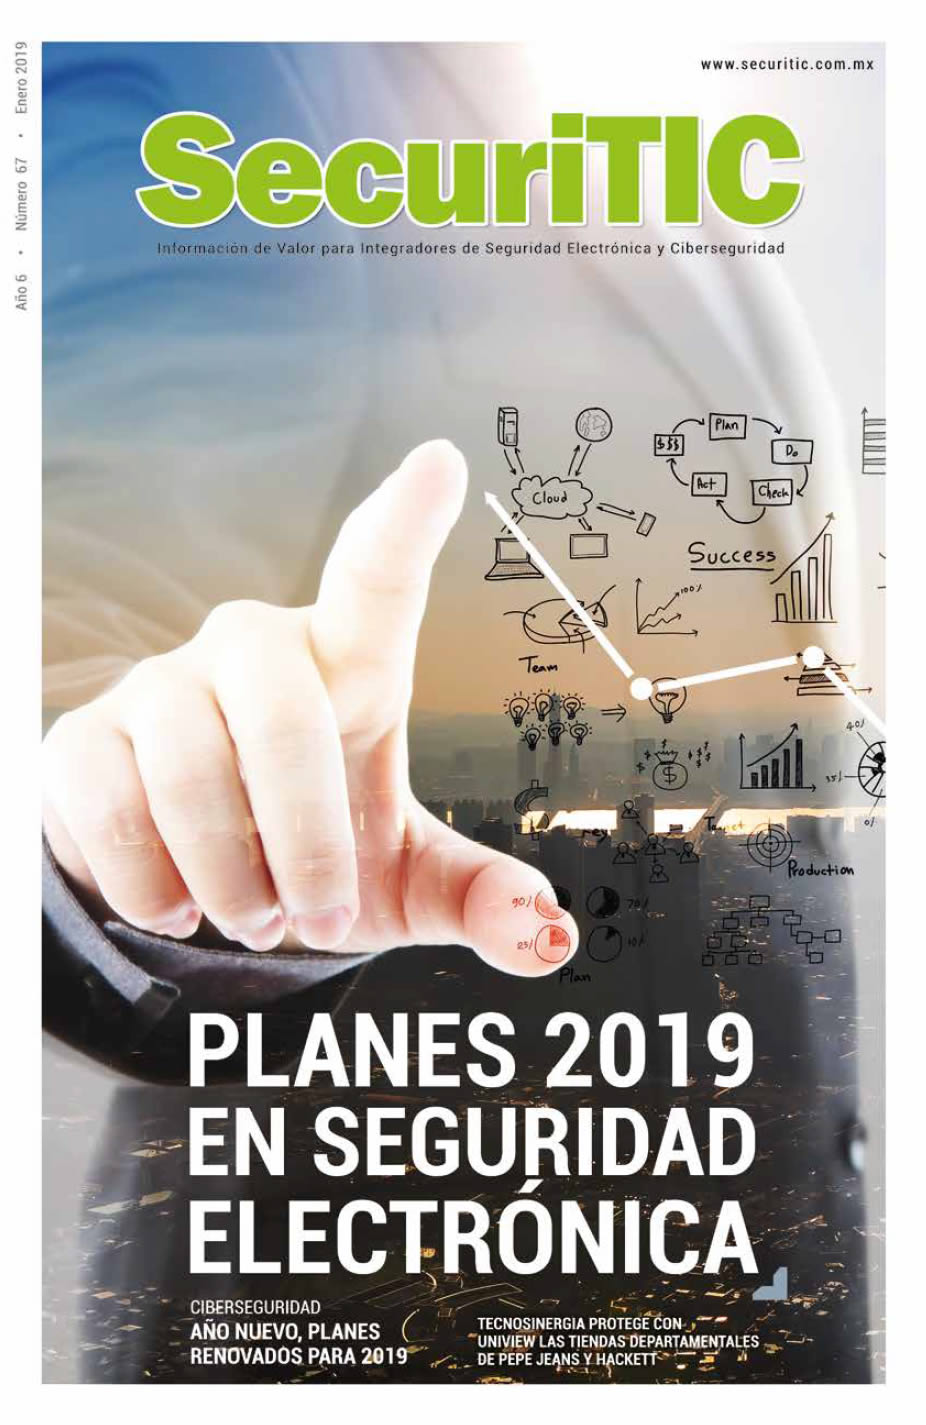 Planes 2019 en Seguridad Electrónica